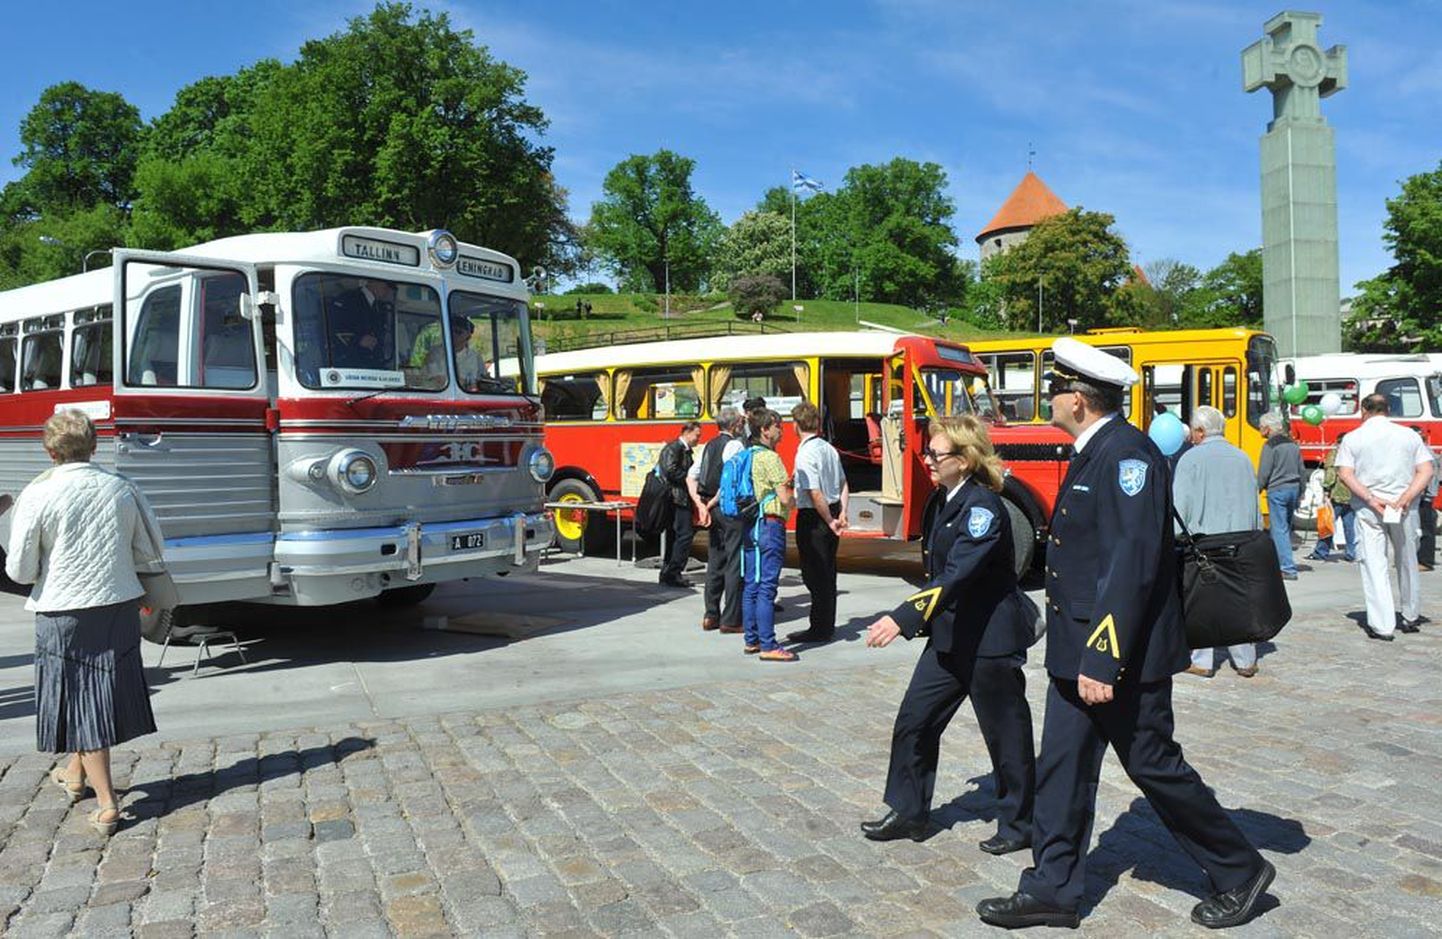 Tallinna autobussikoondis tähistas eile Vabaduse väljakul Tallinna regulaarse bussiliikluse 90. aastapäeva, mistarvis olid välja pandud ka üsna eakad, ent siiani sõidukorras ühissõidukid.